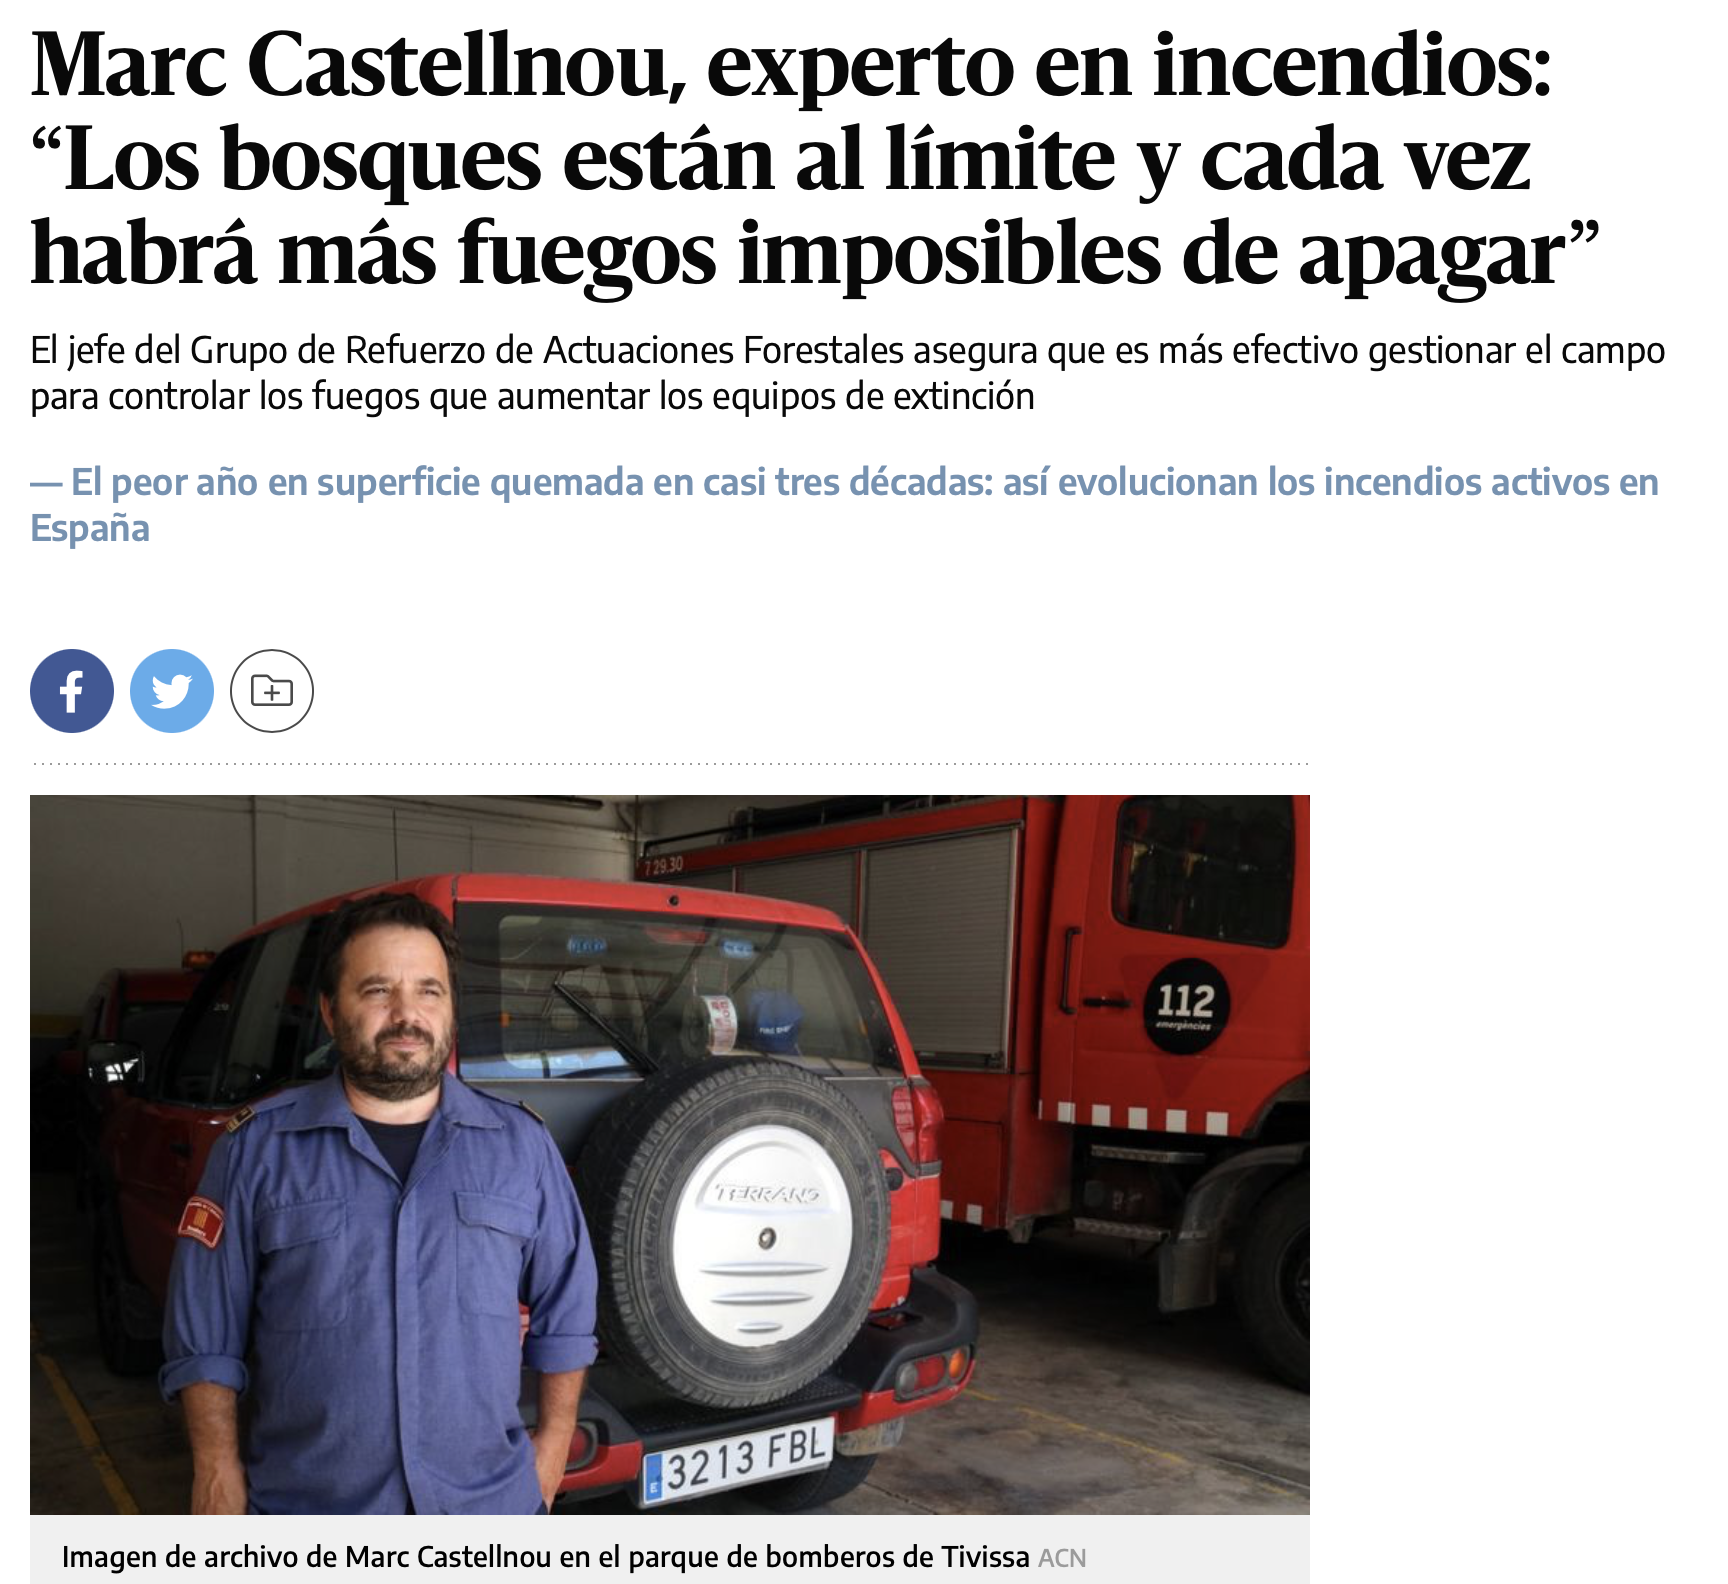 Marc Castellnou, experto en incendios: “Los bosques están al límite y cada vez habrá más fuegos imposibles de apagar”